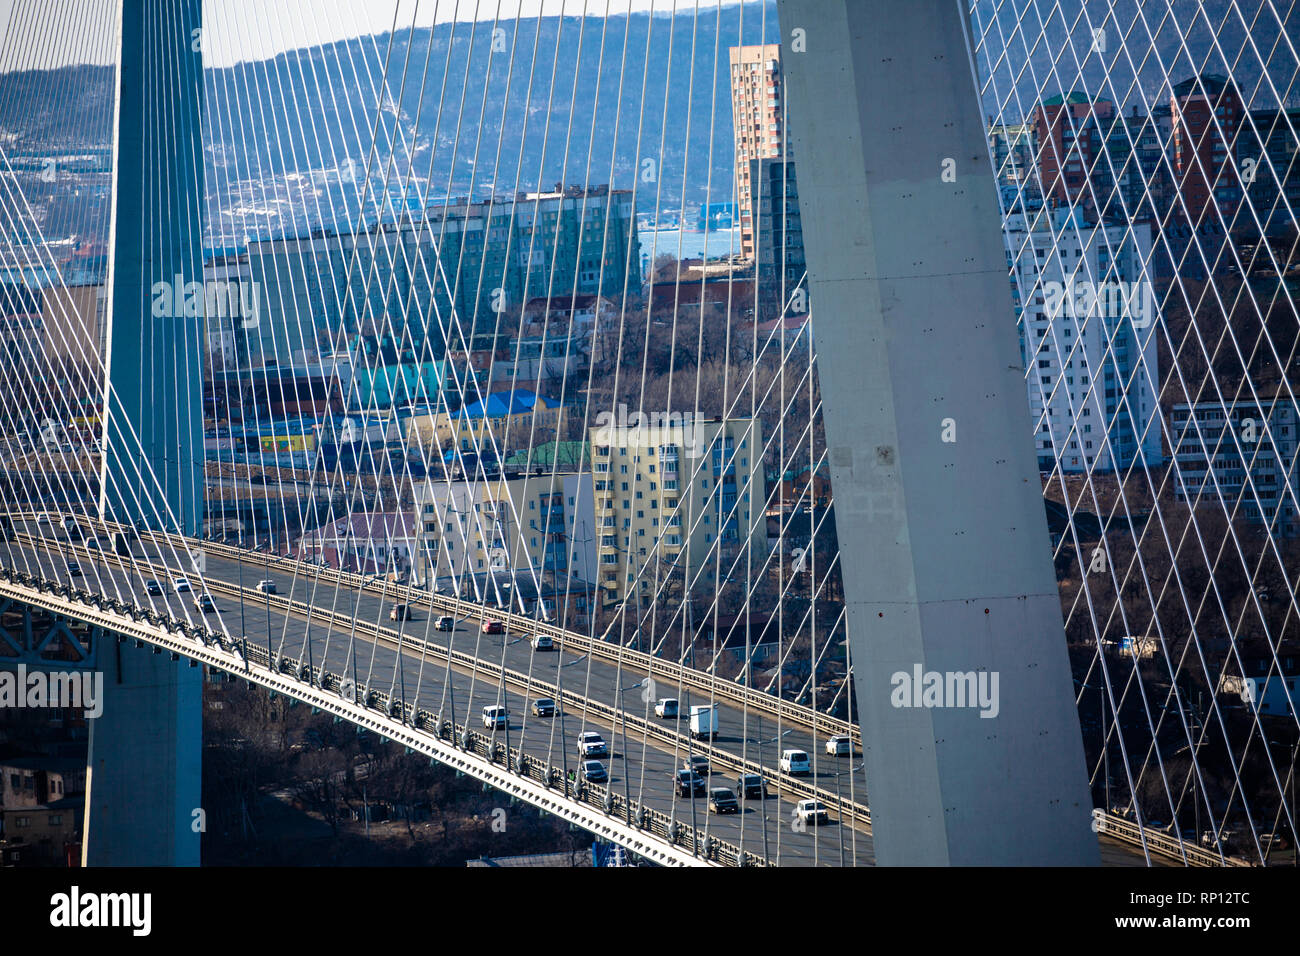 Die klaren Linien und Symmetrie der Mega-Struktur, die die Zolotoy-Brücke, Wladiwostok, Russland ist Stockfoto